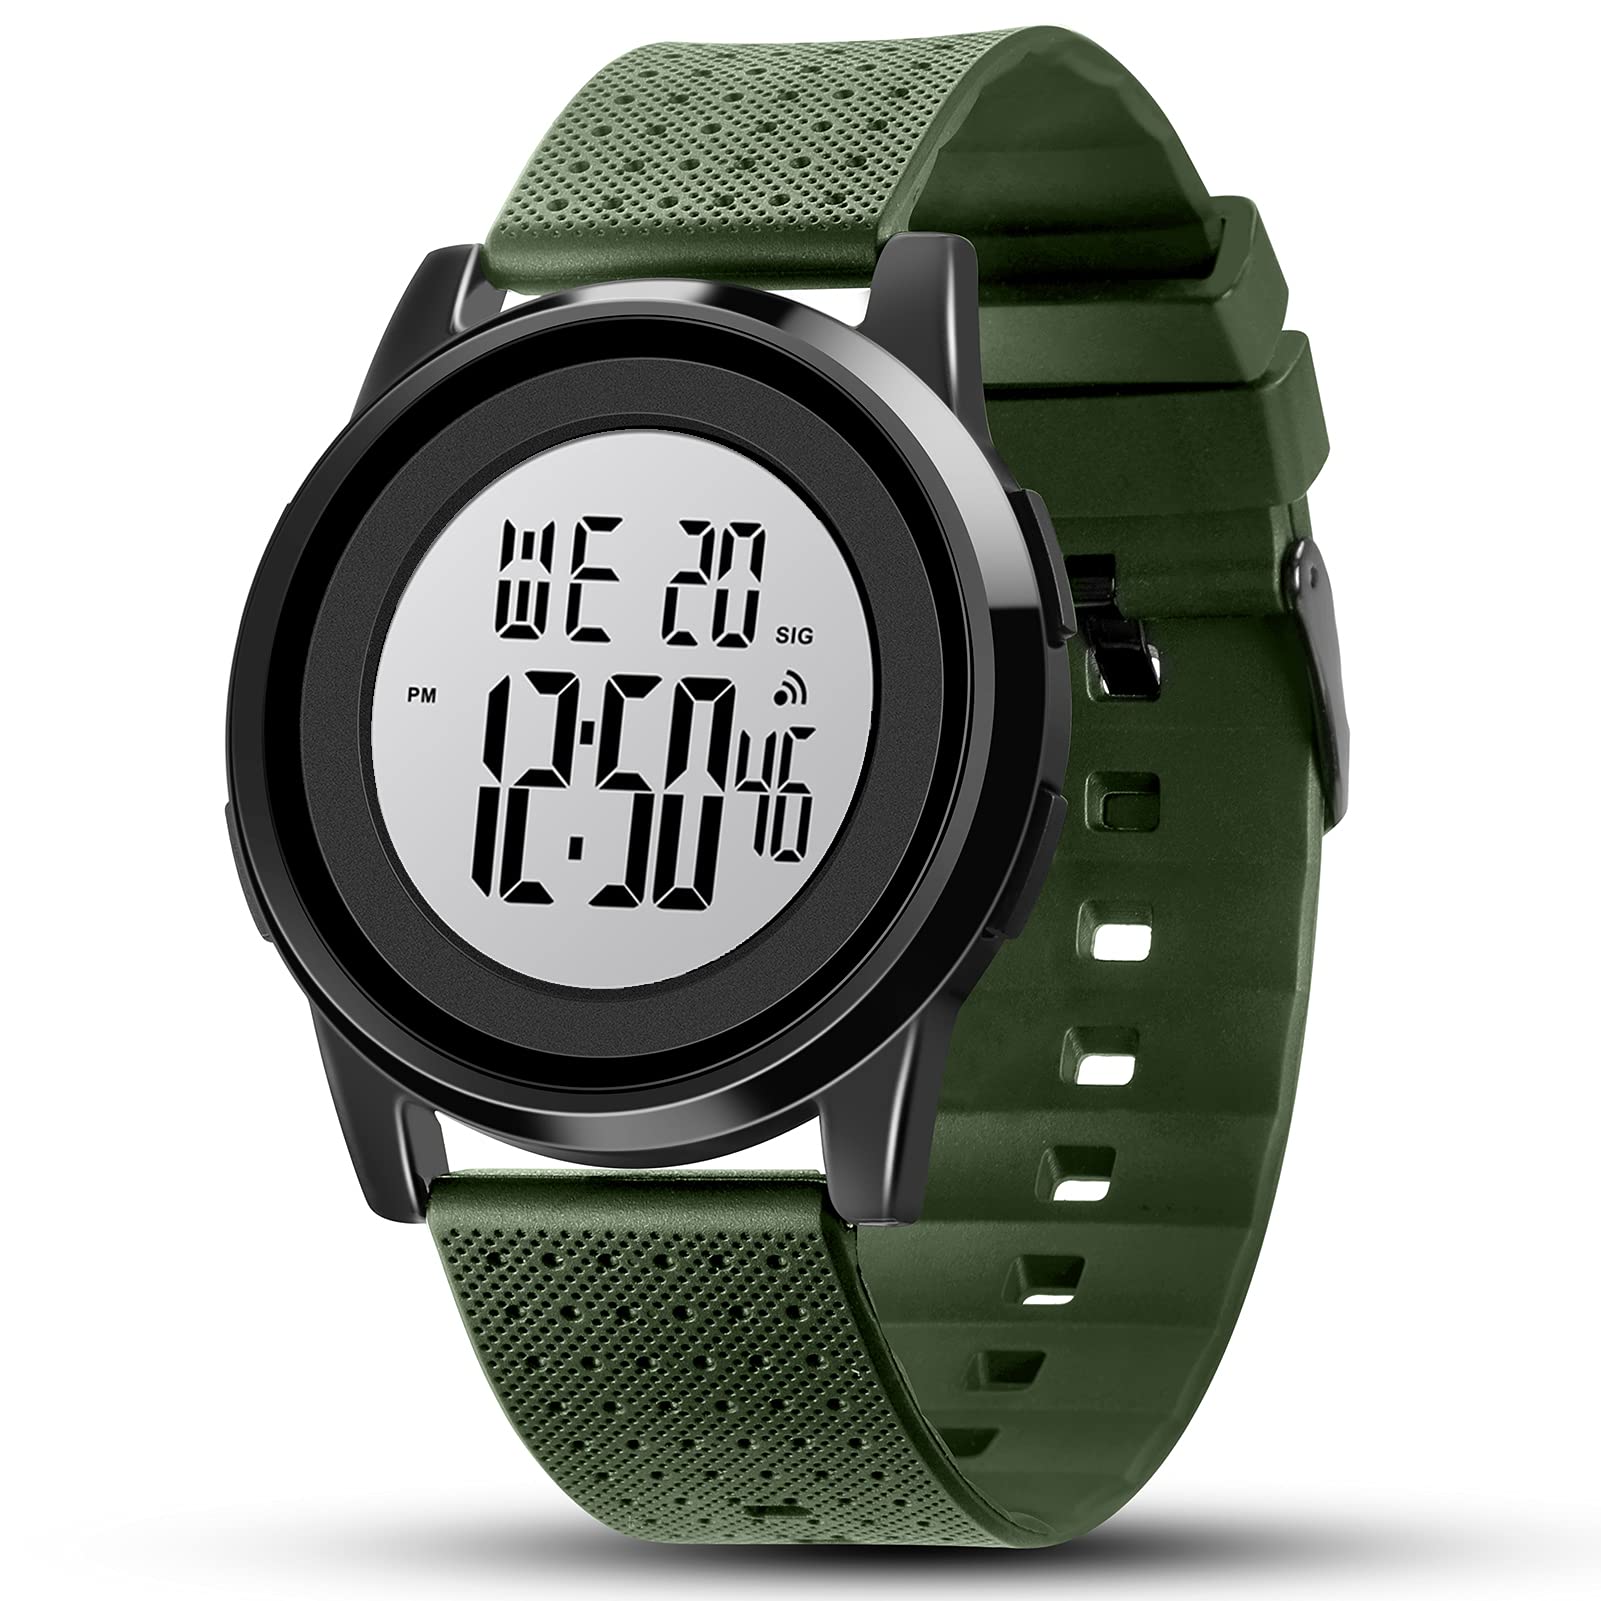 YUINK Mens Digital Watch Ultra-Thin Sports Waterproof Simple Watch Stainless Steel Wrist Watch for Men Women